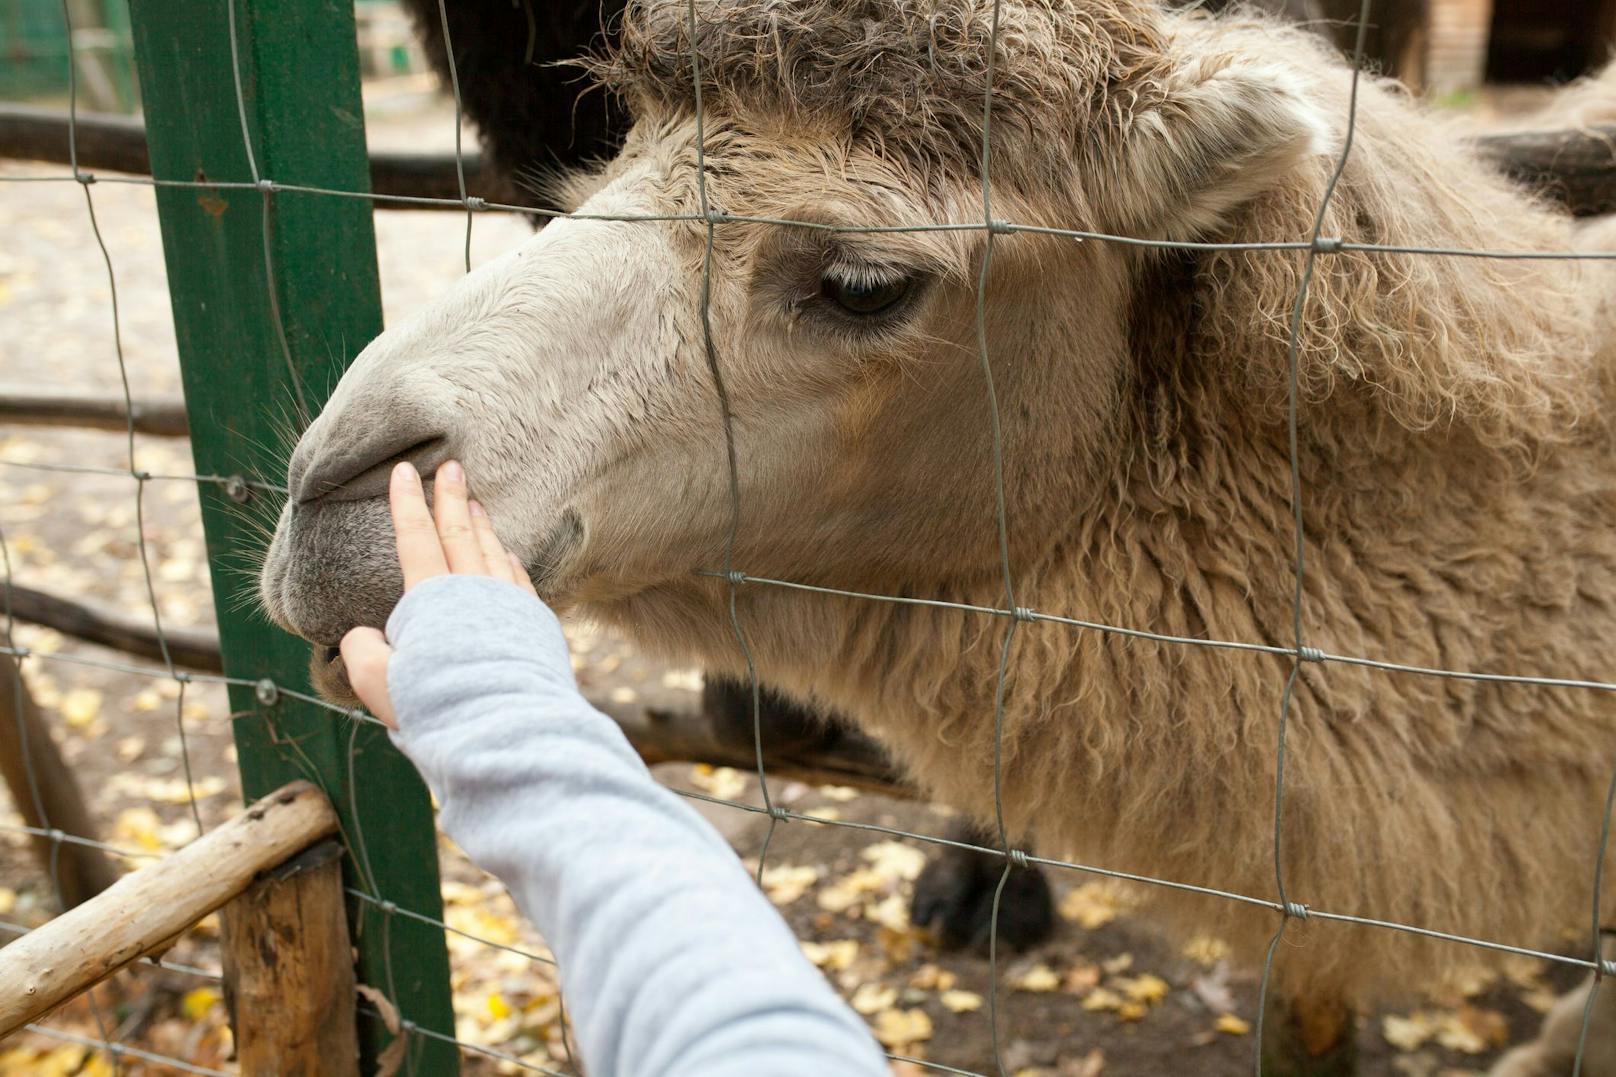 Ein Kamel wird durch den Zaun seines Geheges in einem Zoo von einem Besucher gestreichelt. (Symbolbild)